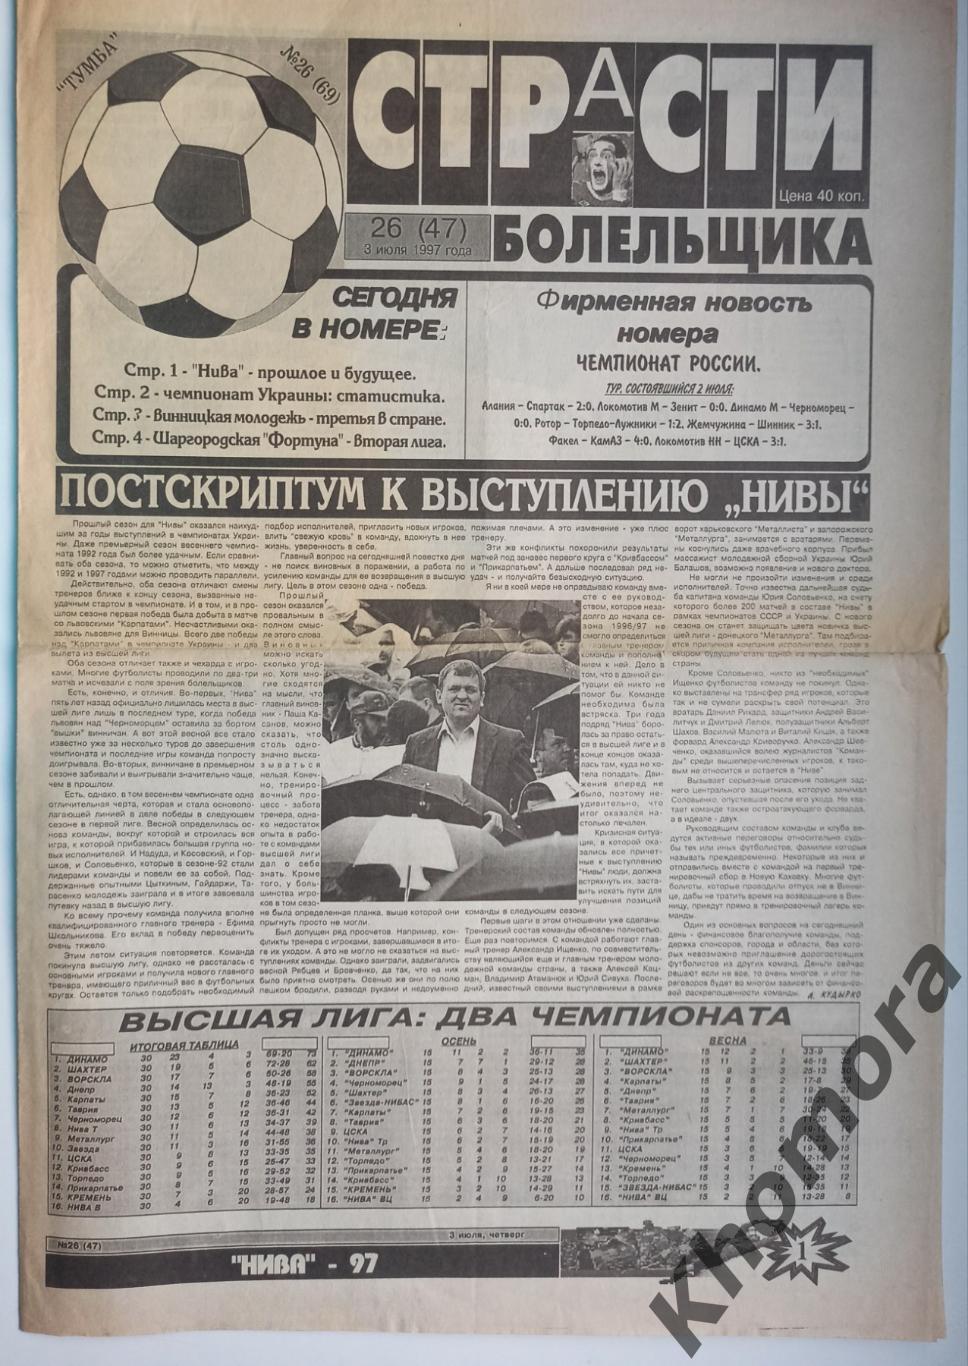 Страсти болельщика (Винница) №26 от 3 июля 1997 года - спортивная газета